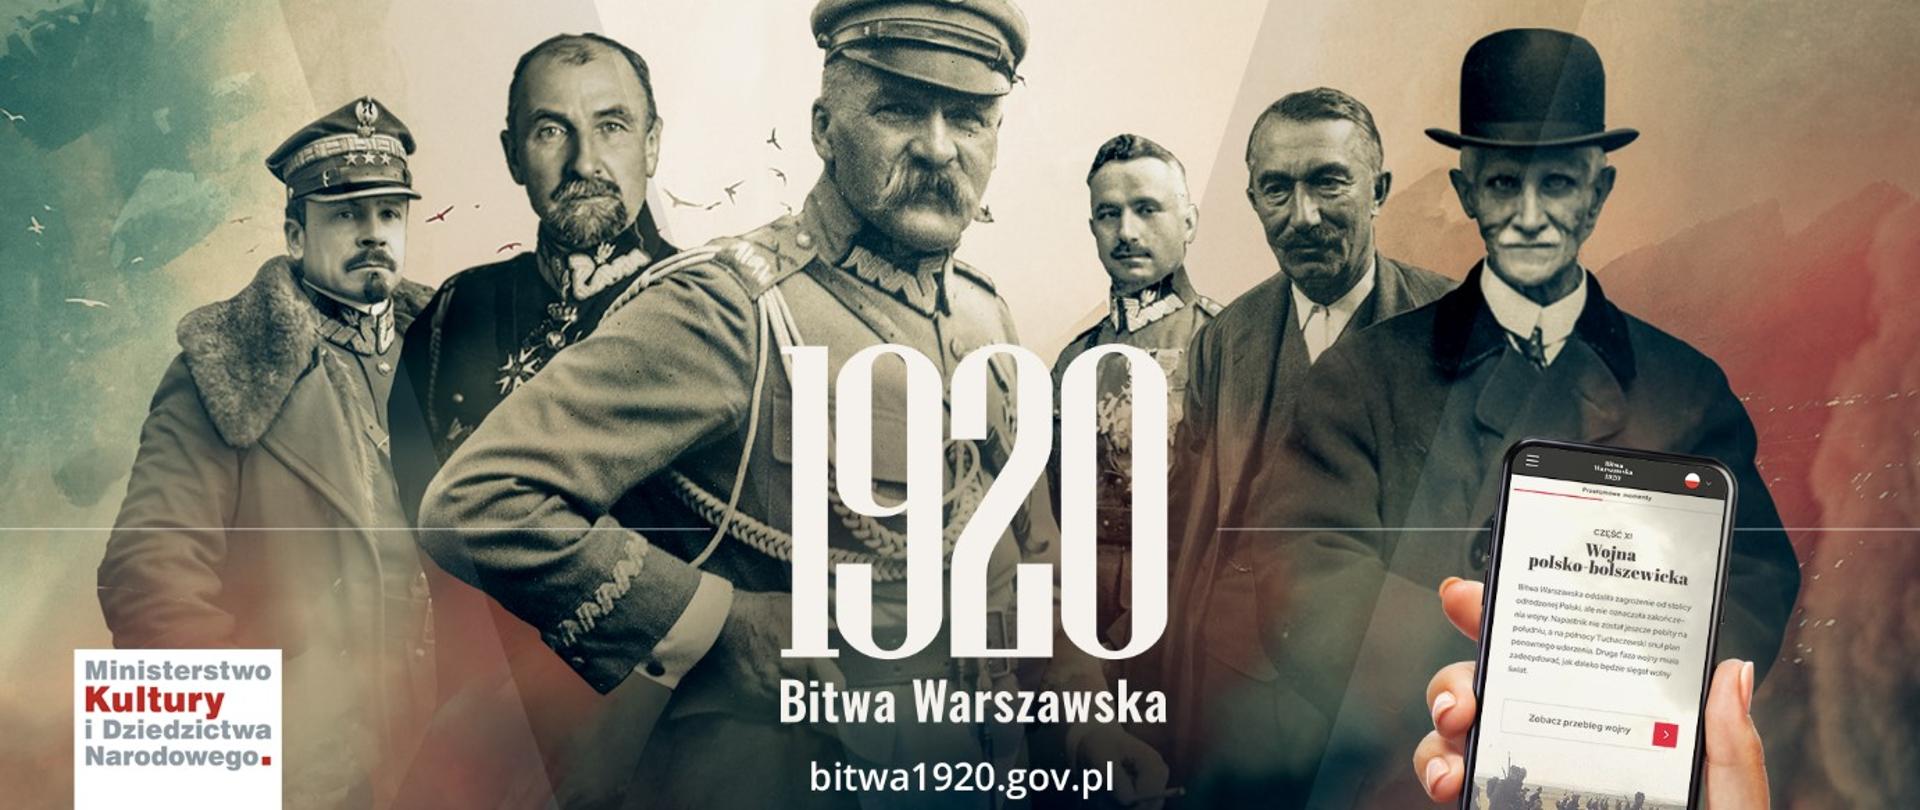 Битва 1920.gov.pl - повествовательный веб-сайт Польского Радио и „Независимой”